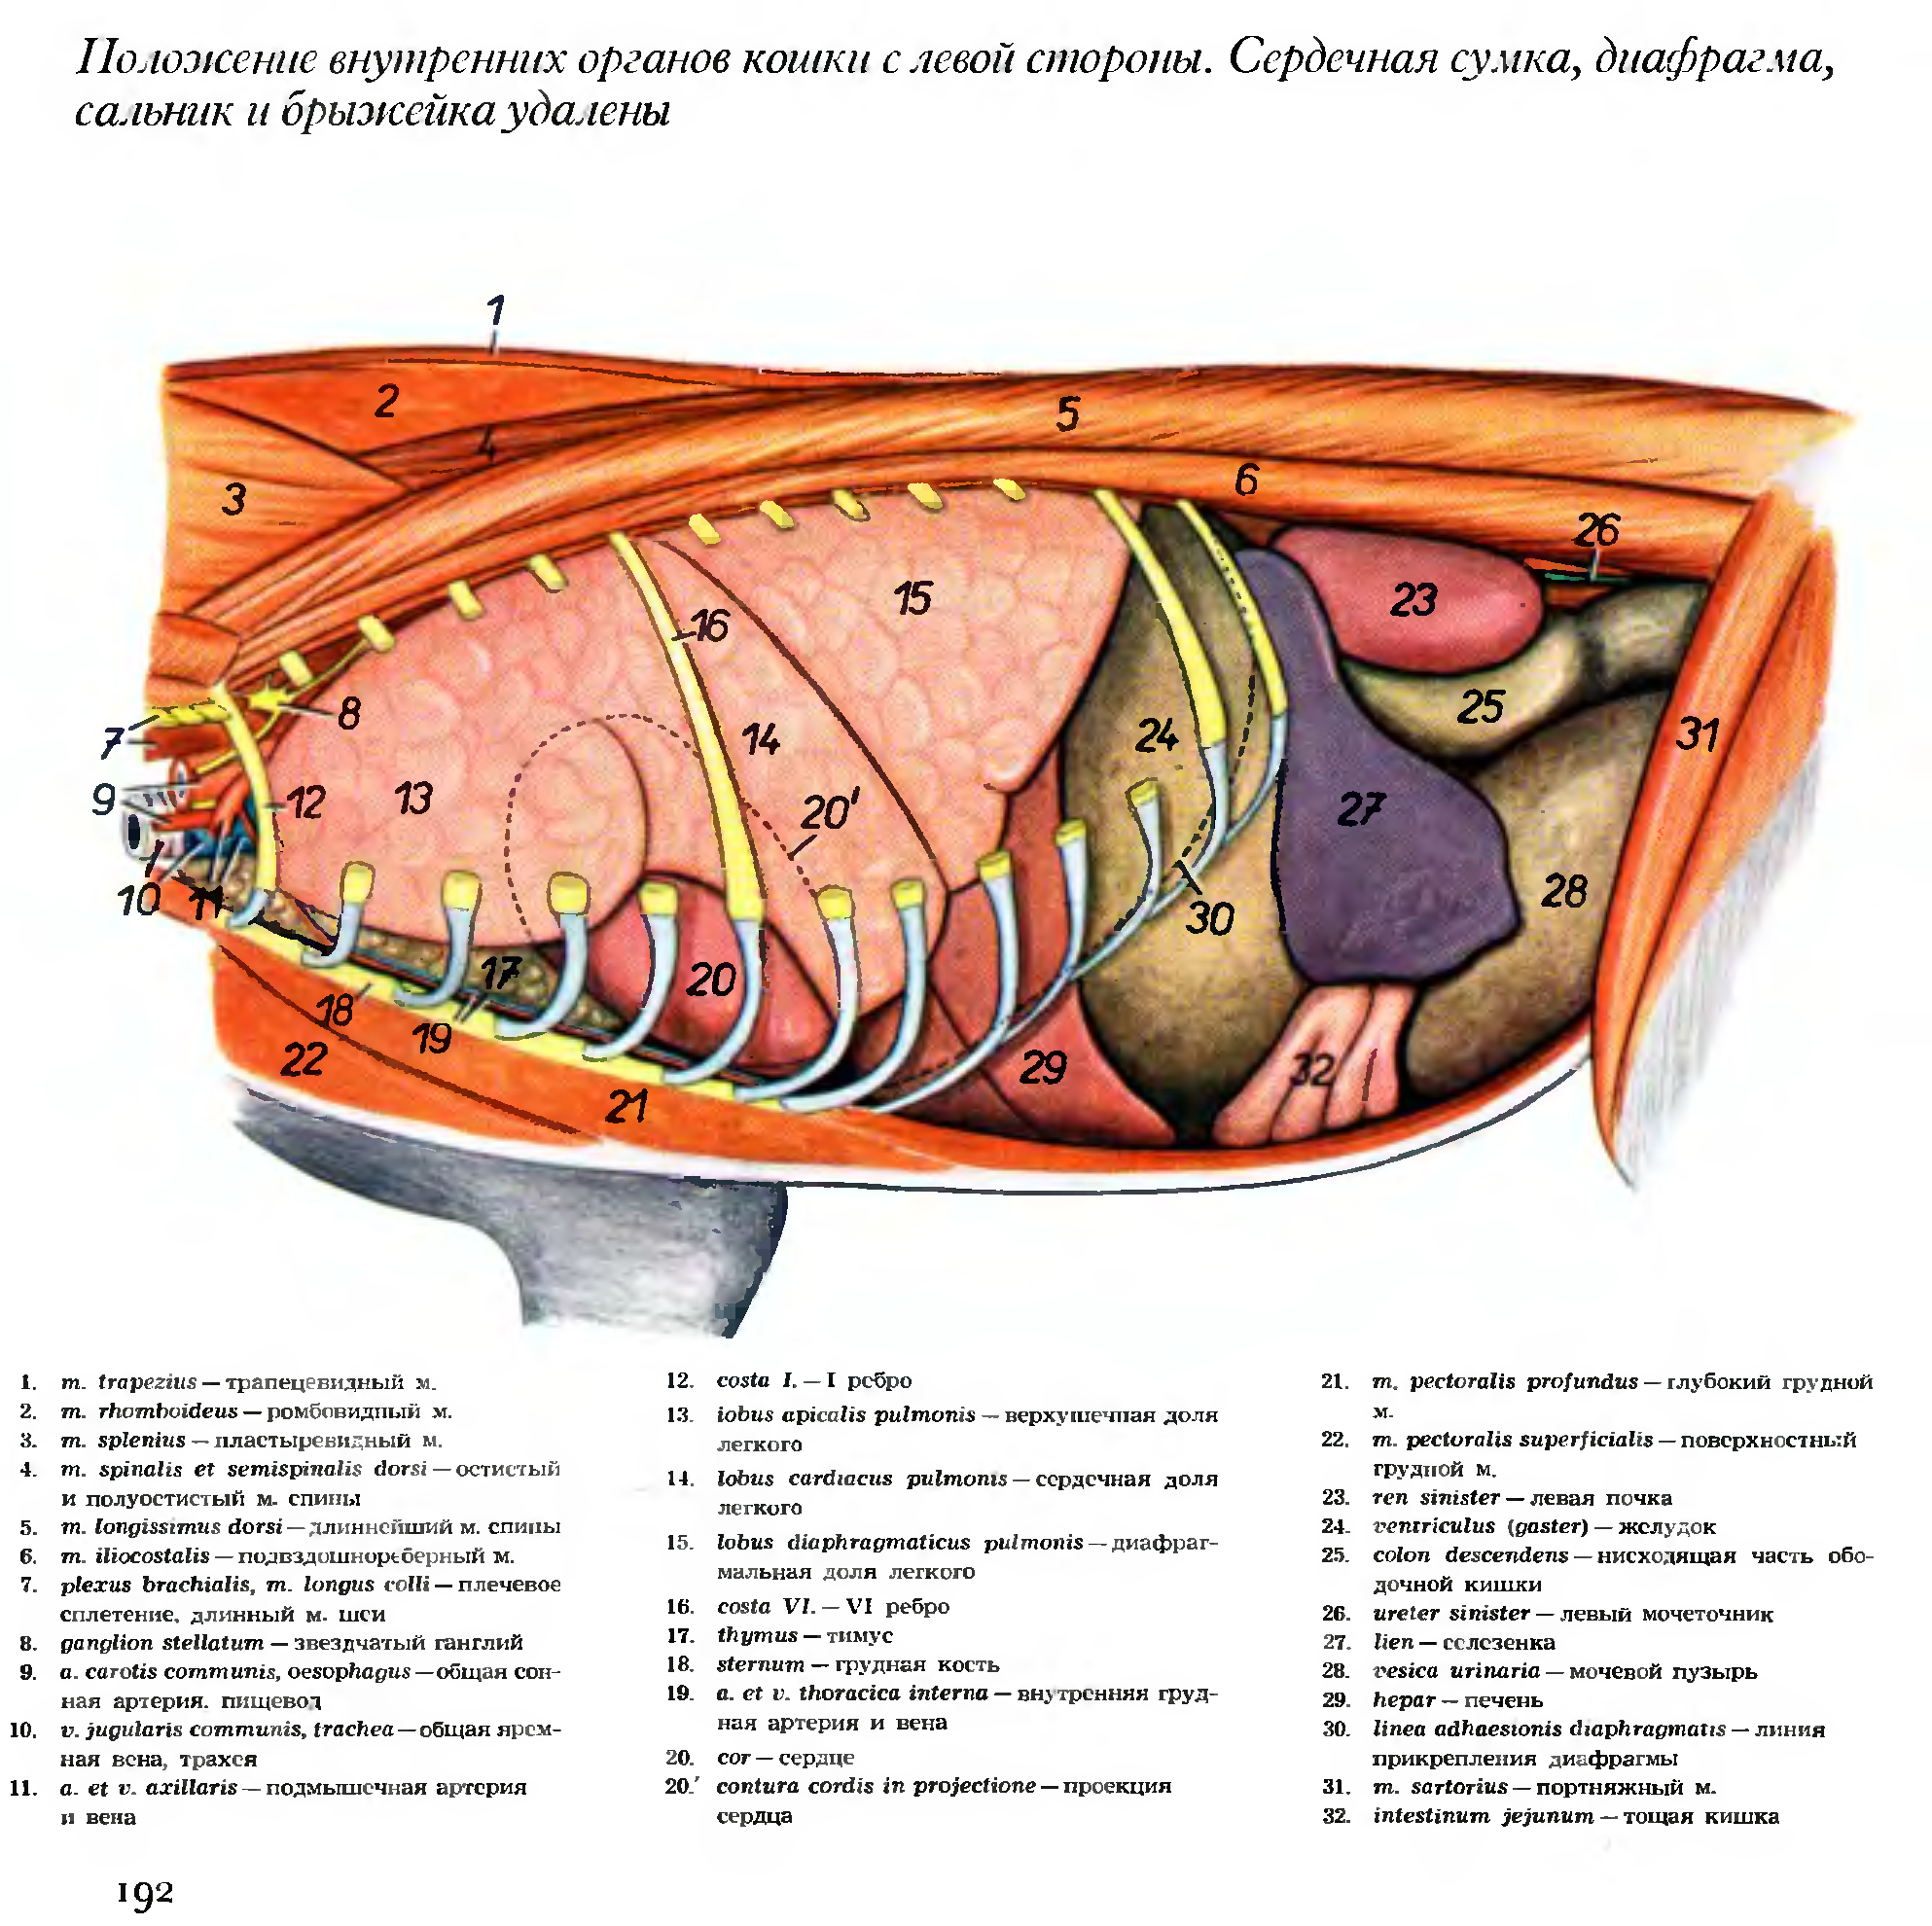 Топография органов брюшной полости коровы